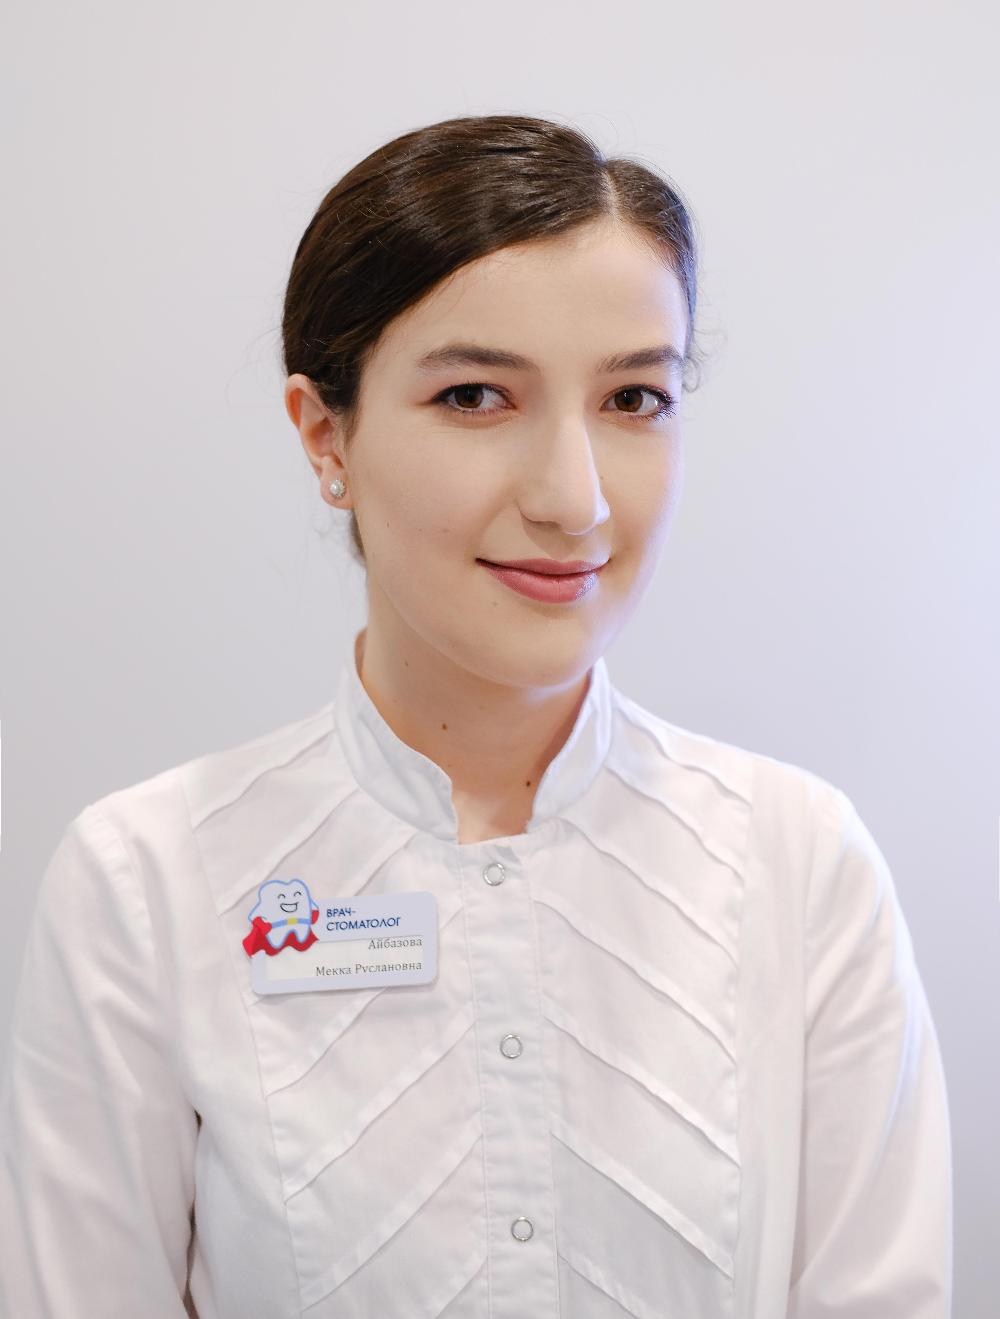 Врач-стоматолог общей практики — Айбазова Мекка Руслановна